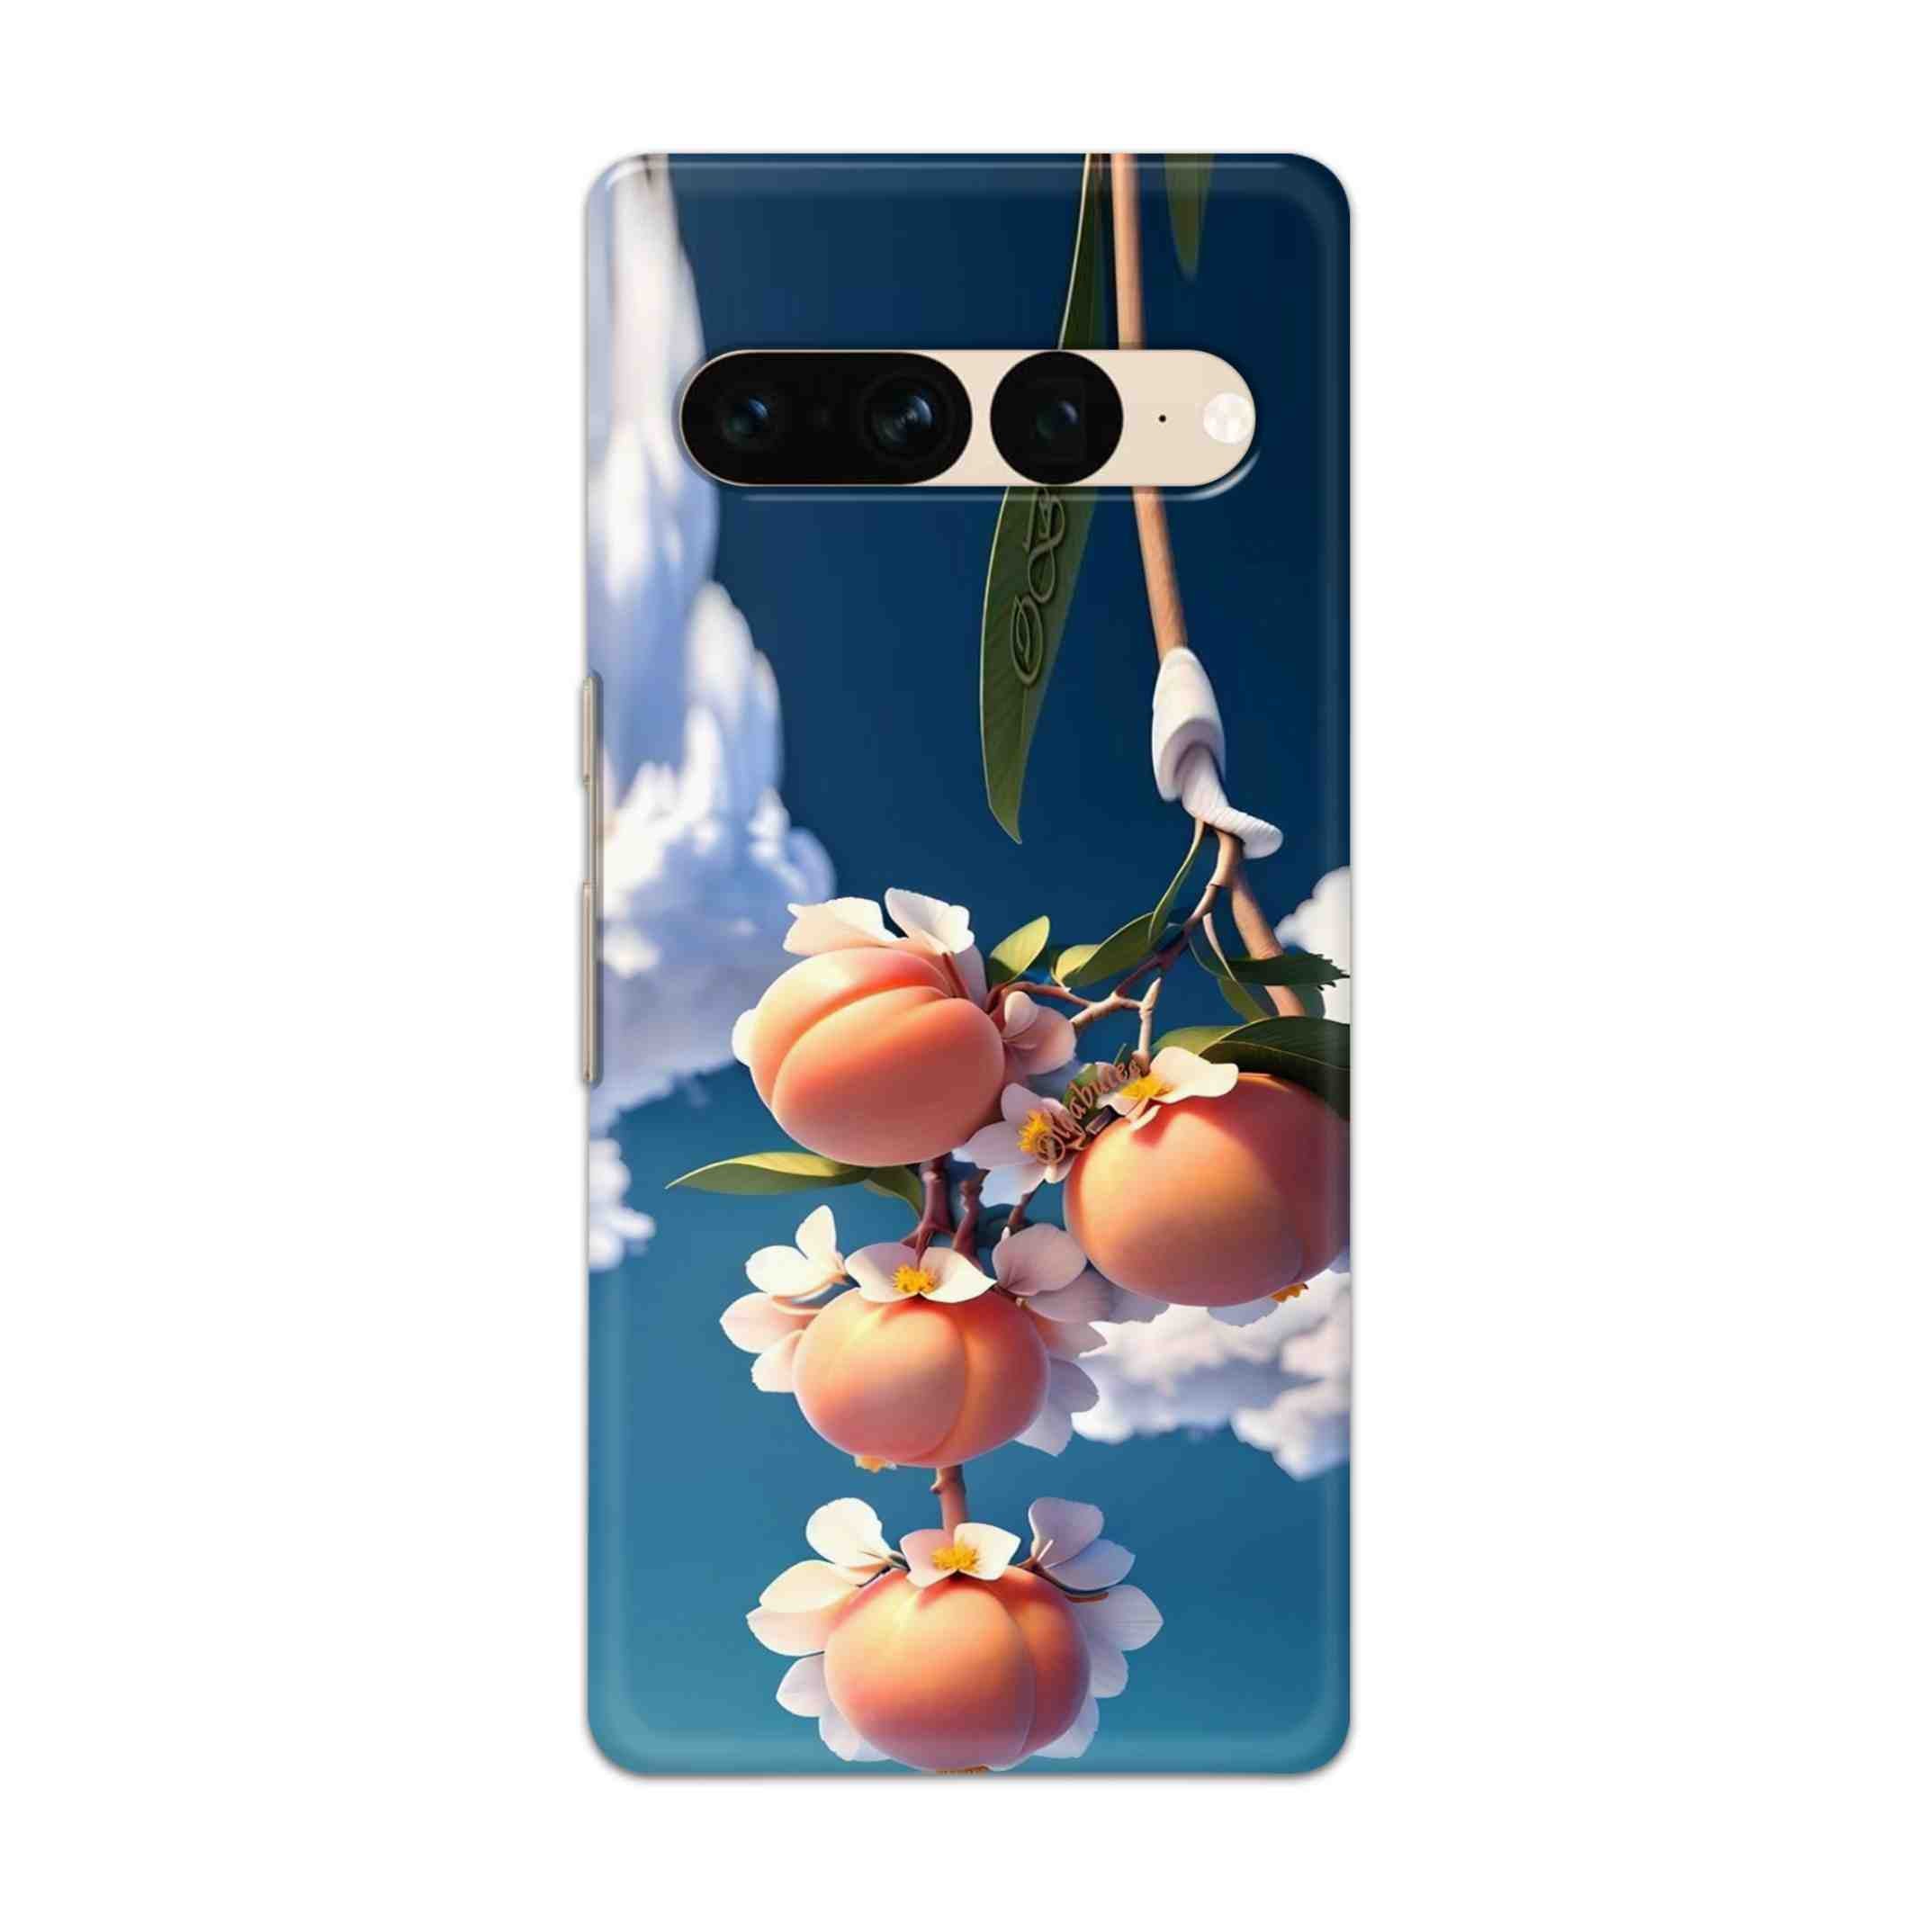 Buy Fruit Hard Back Mobile Phone Case Cover For Google Pixel 7 Pro Online